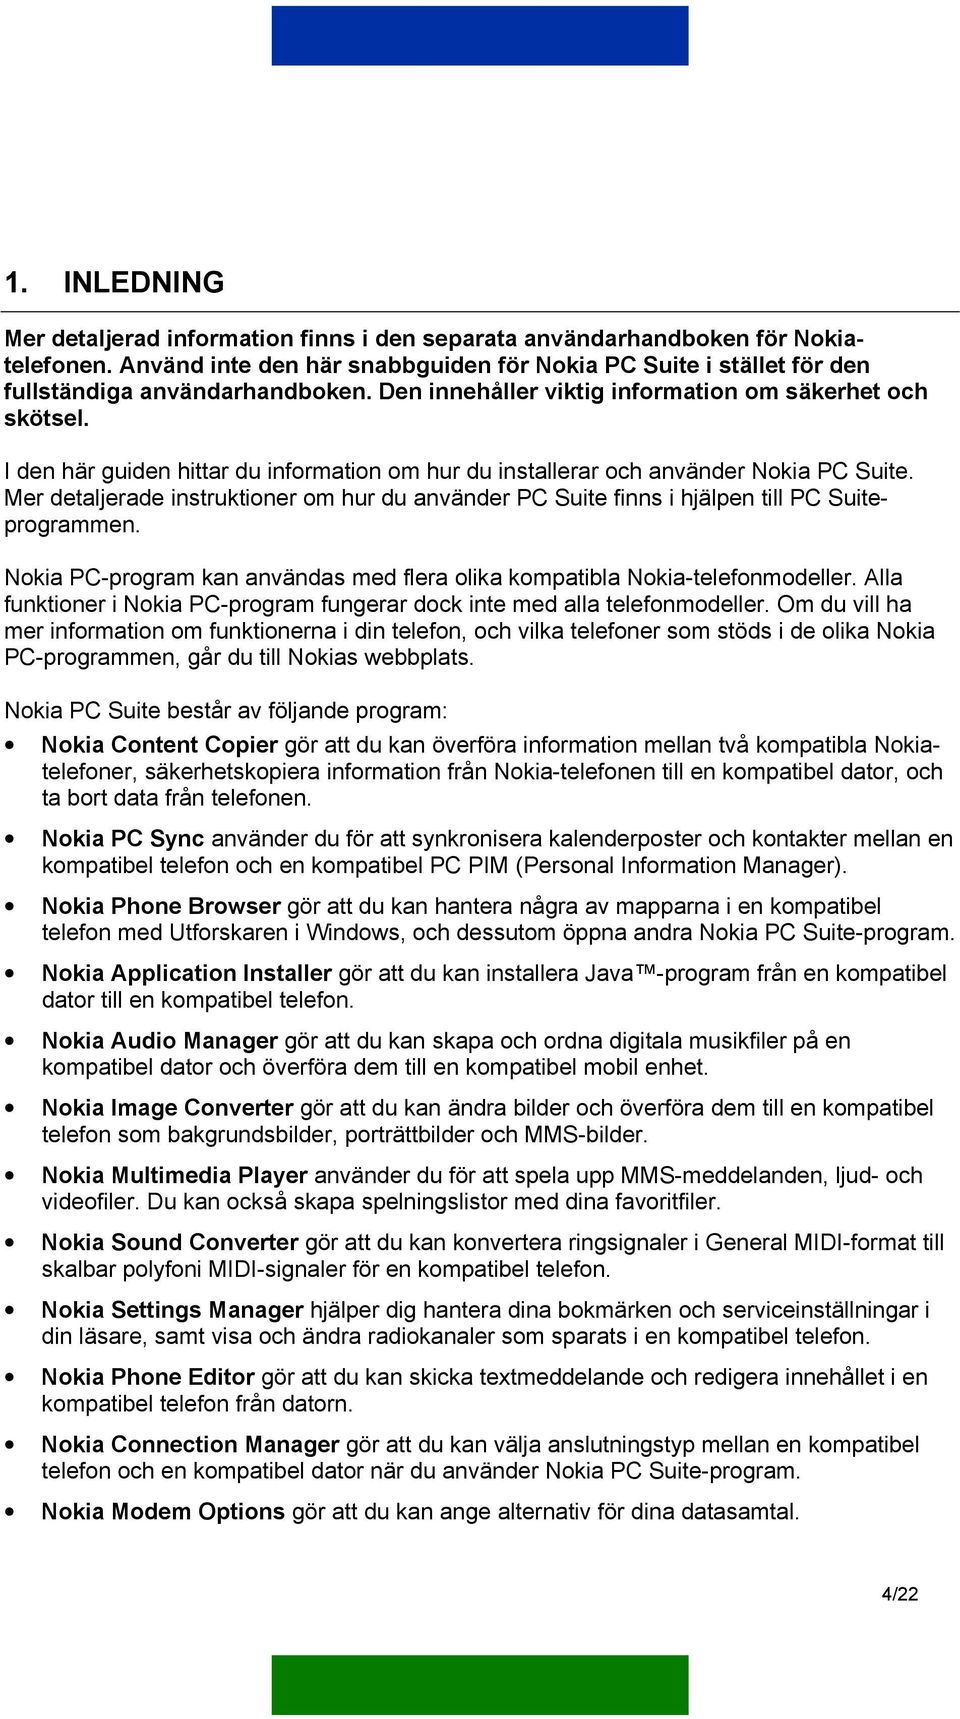 Mer detaljerade instruktioner om hur du använder PC Suite finns i hjälpen till PC Suiteprogrammen. Nokia PC-program kan användas med flera olika kompatibla Nokia-telefonmodeller.